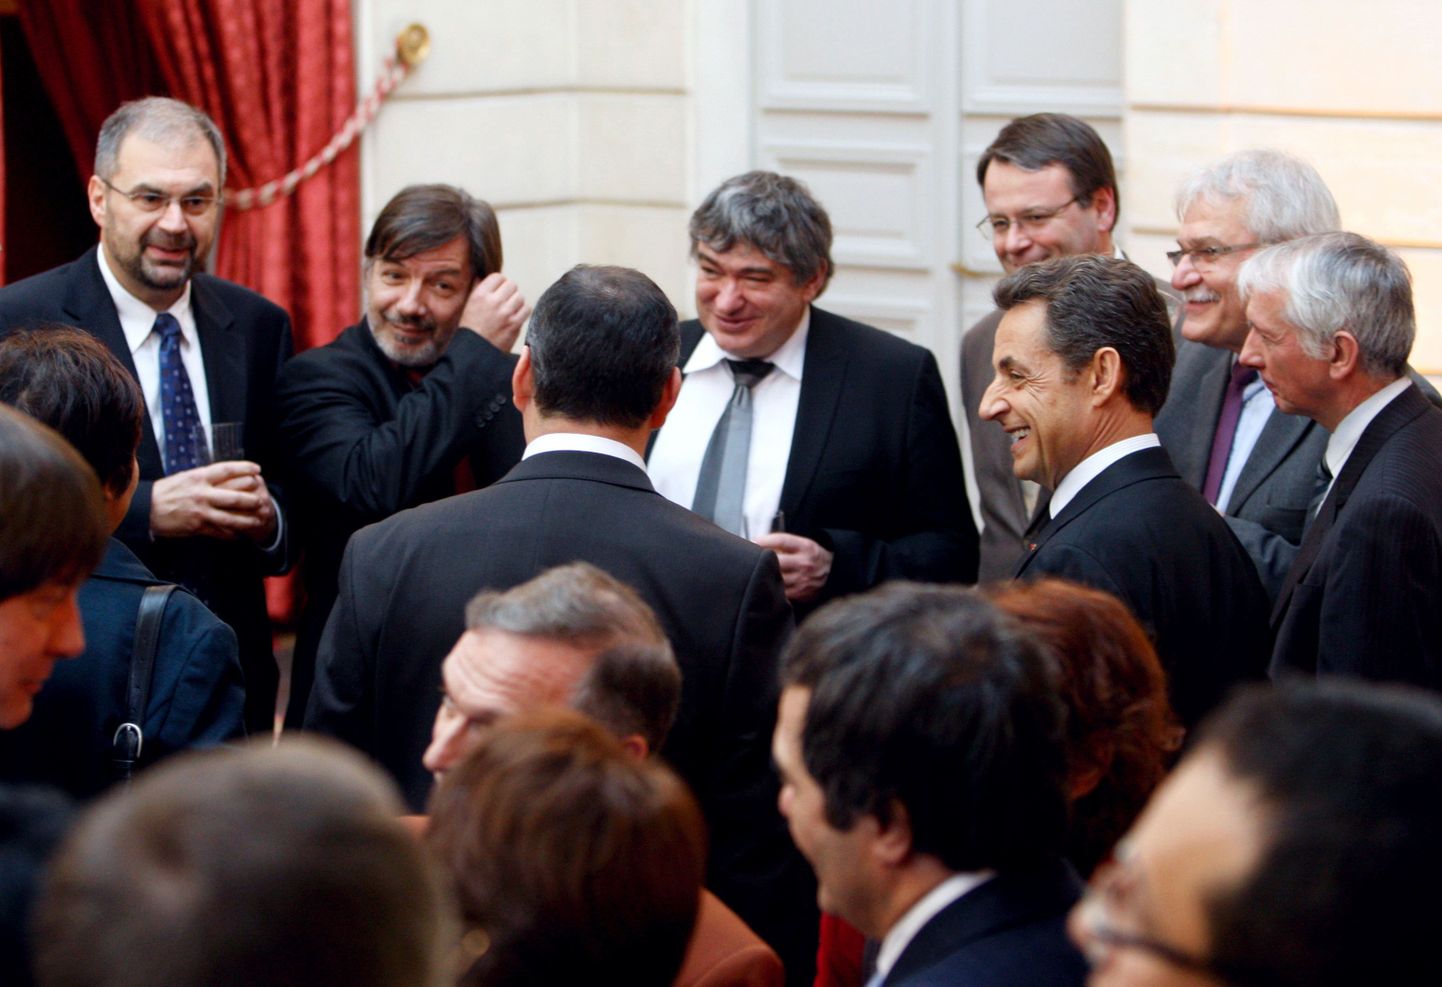 Prantsusmaa president Nicolas Sarkozy (paremalt) reedel ametiühingute esindajatega kohtumas. Ametiühingute esindajad olid Renault Clio võimaliku Türgis valmistamise otsusega rahulolematud. Laupäeval kutsus Sarkozy Renault’ tegevjuhi Carlos Ghosni enda juurde vaibale.